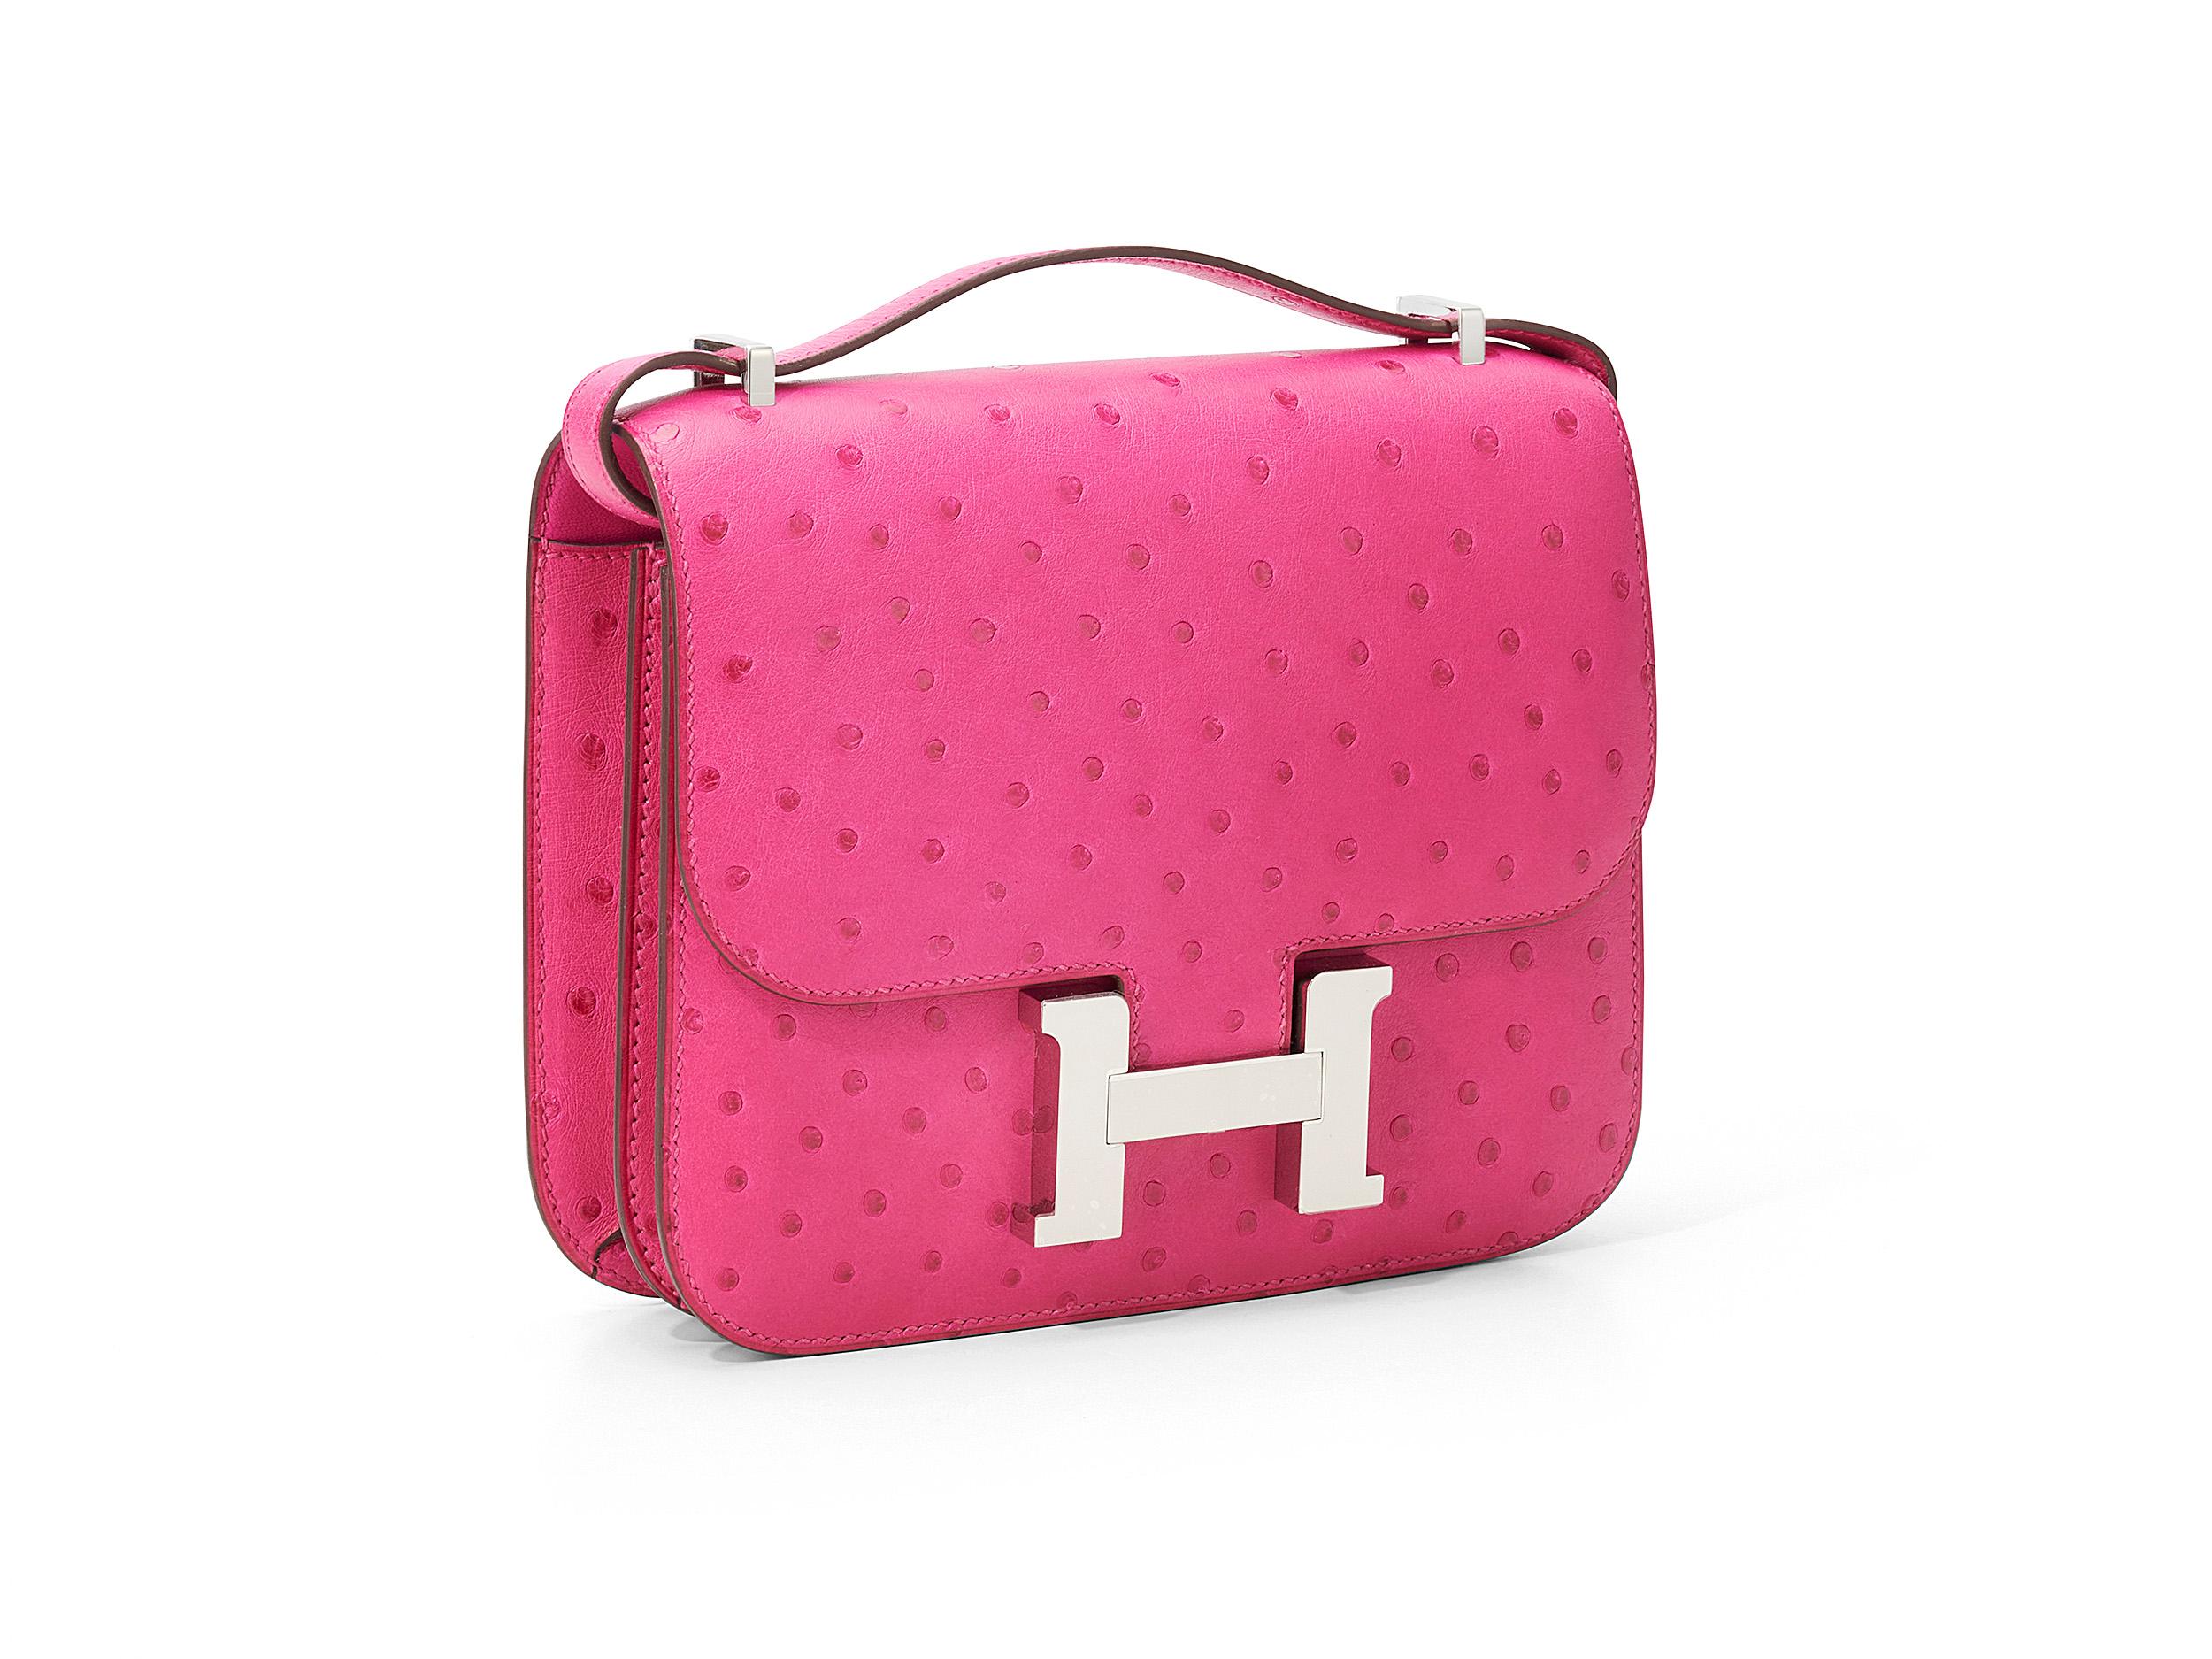 Hermès Constance aus rosa Tyrannen- und Straußenleder mit Palladiumbeschlägen. Die Tasche ist ungetragen und wird als komplettes Set inklusive der Originalquittung geliefert.
Stempel Y (2020) 

